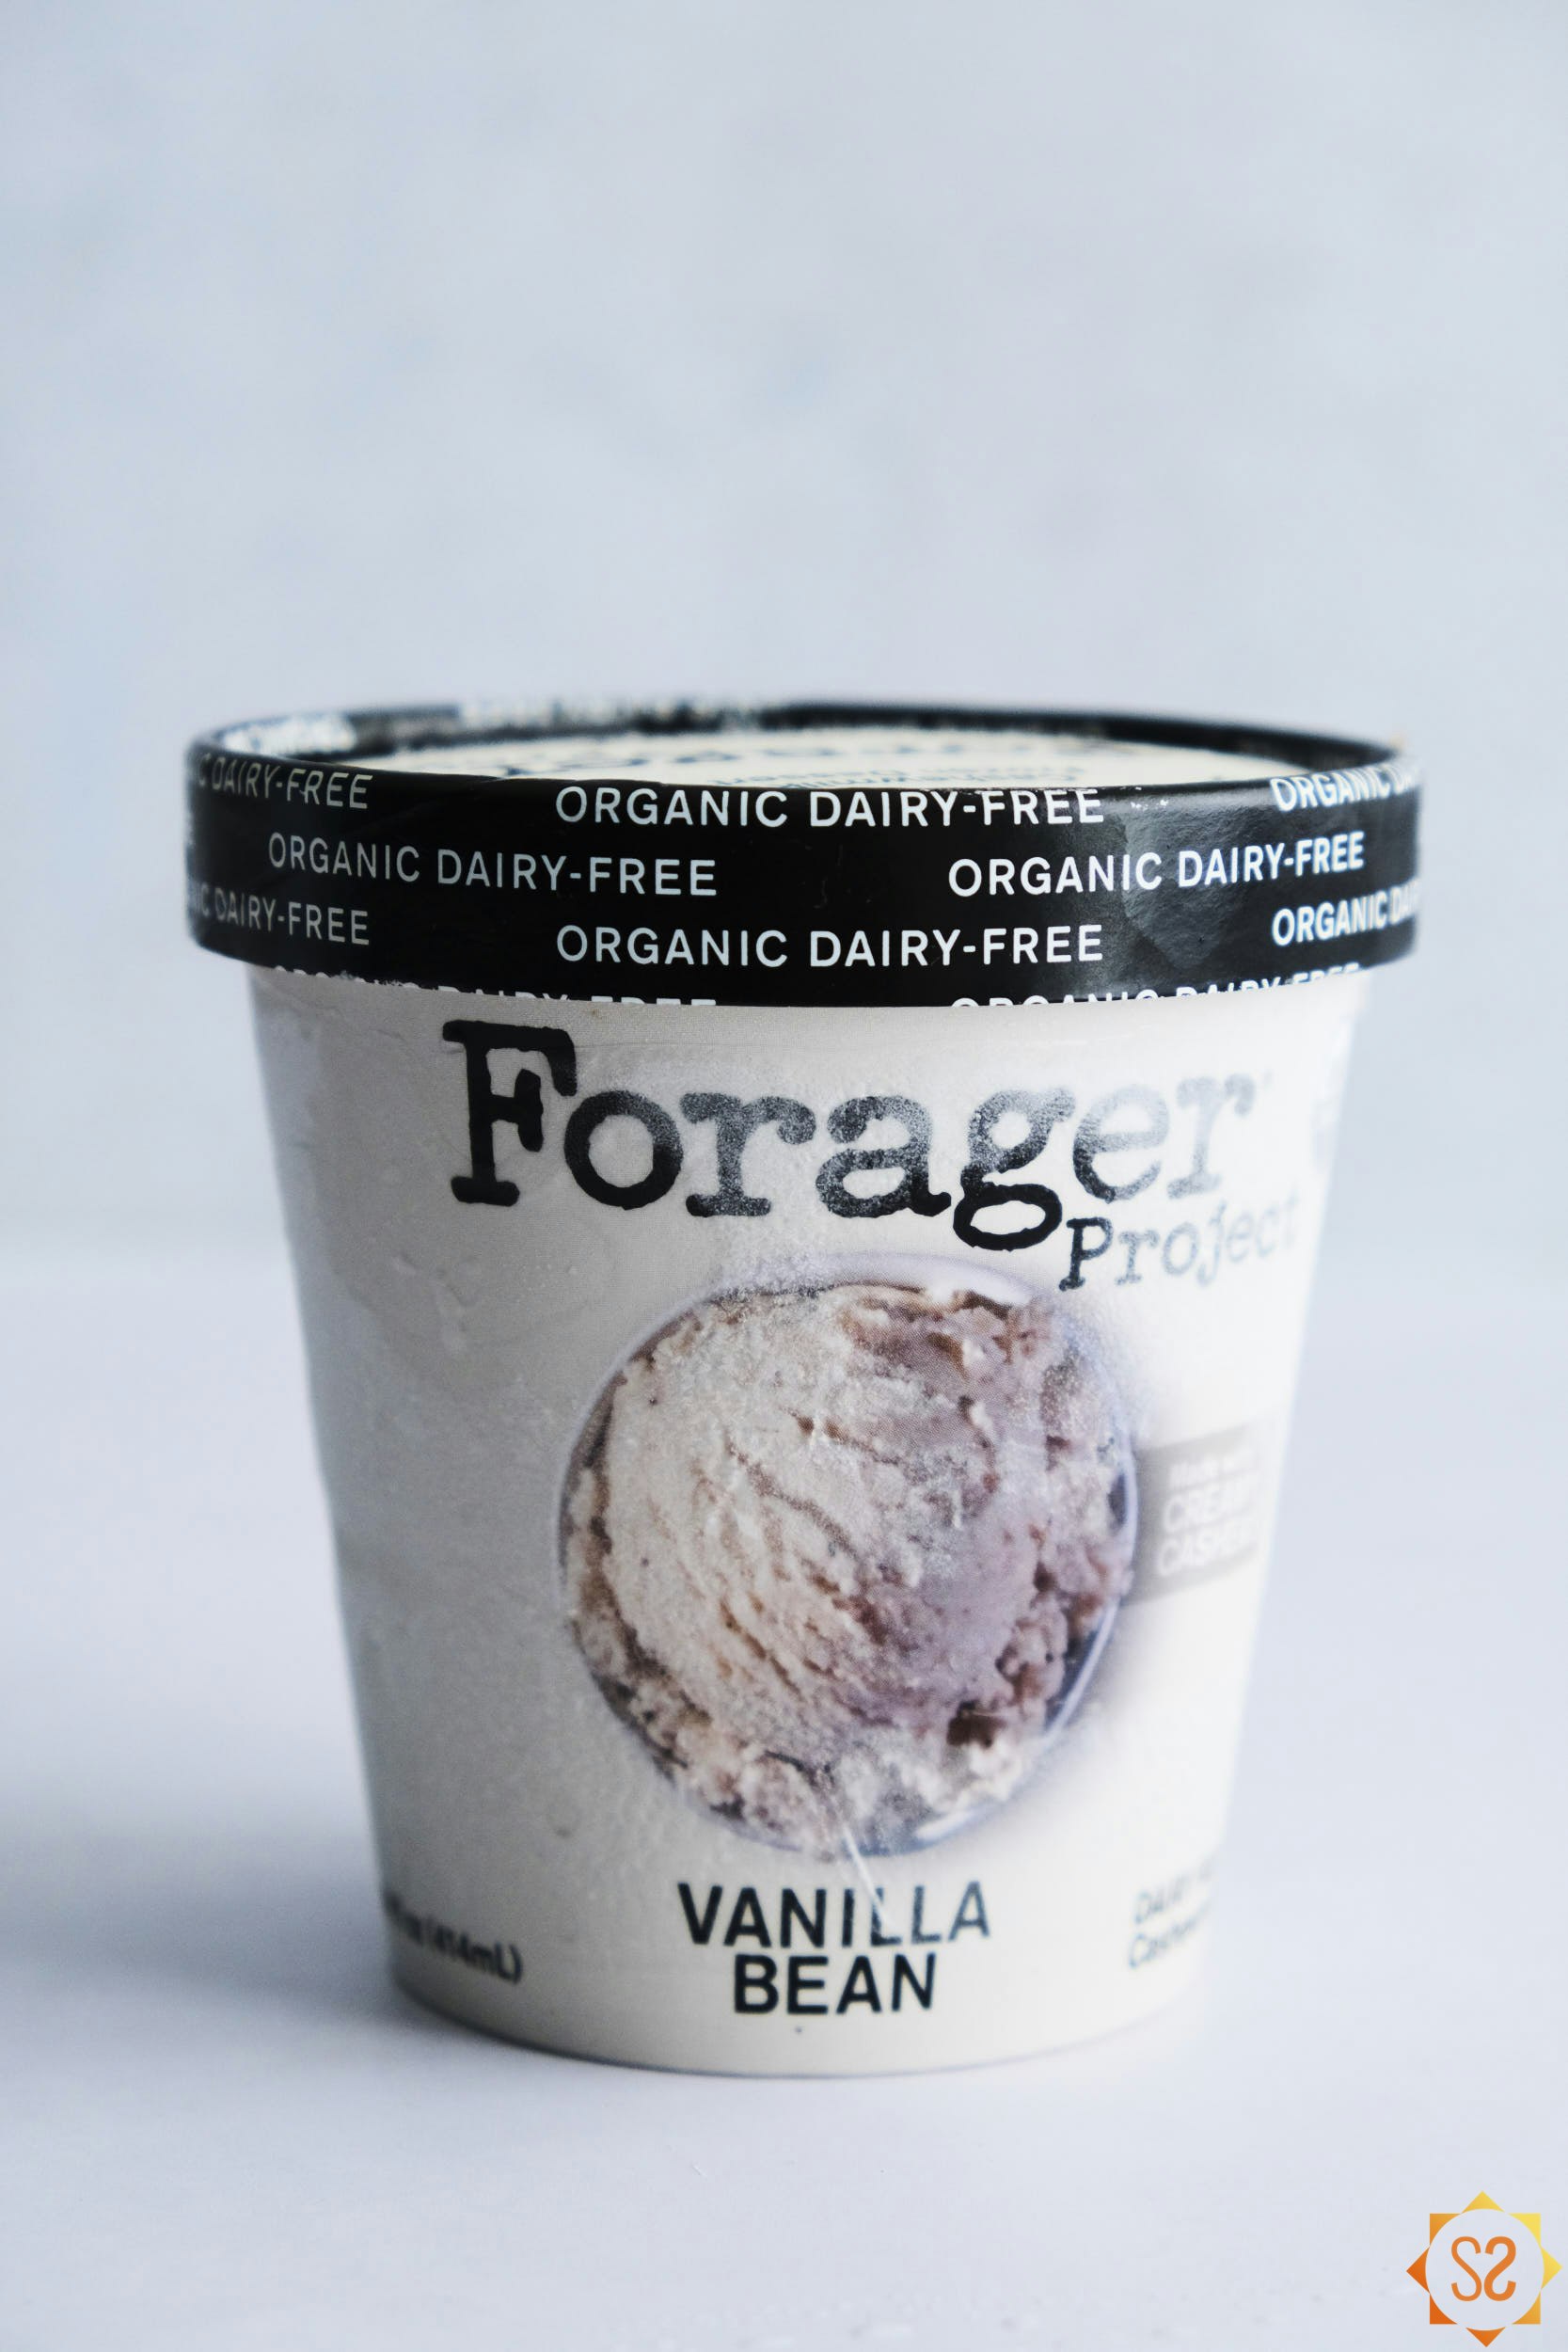 Forager Vanilla Bean Frozen Dessert package